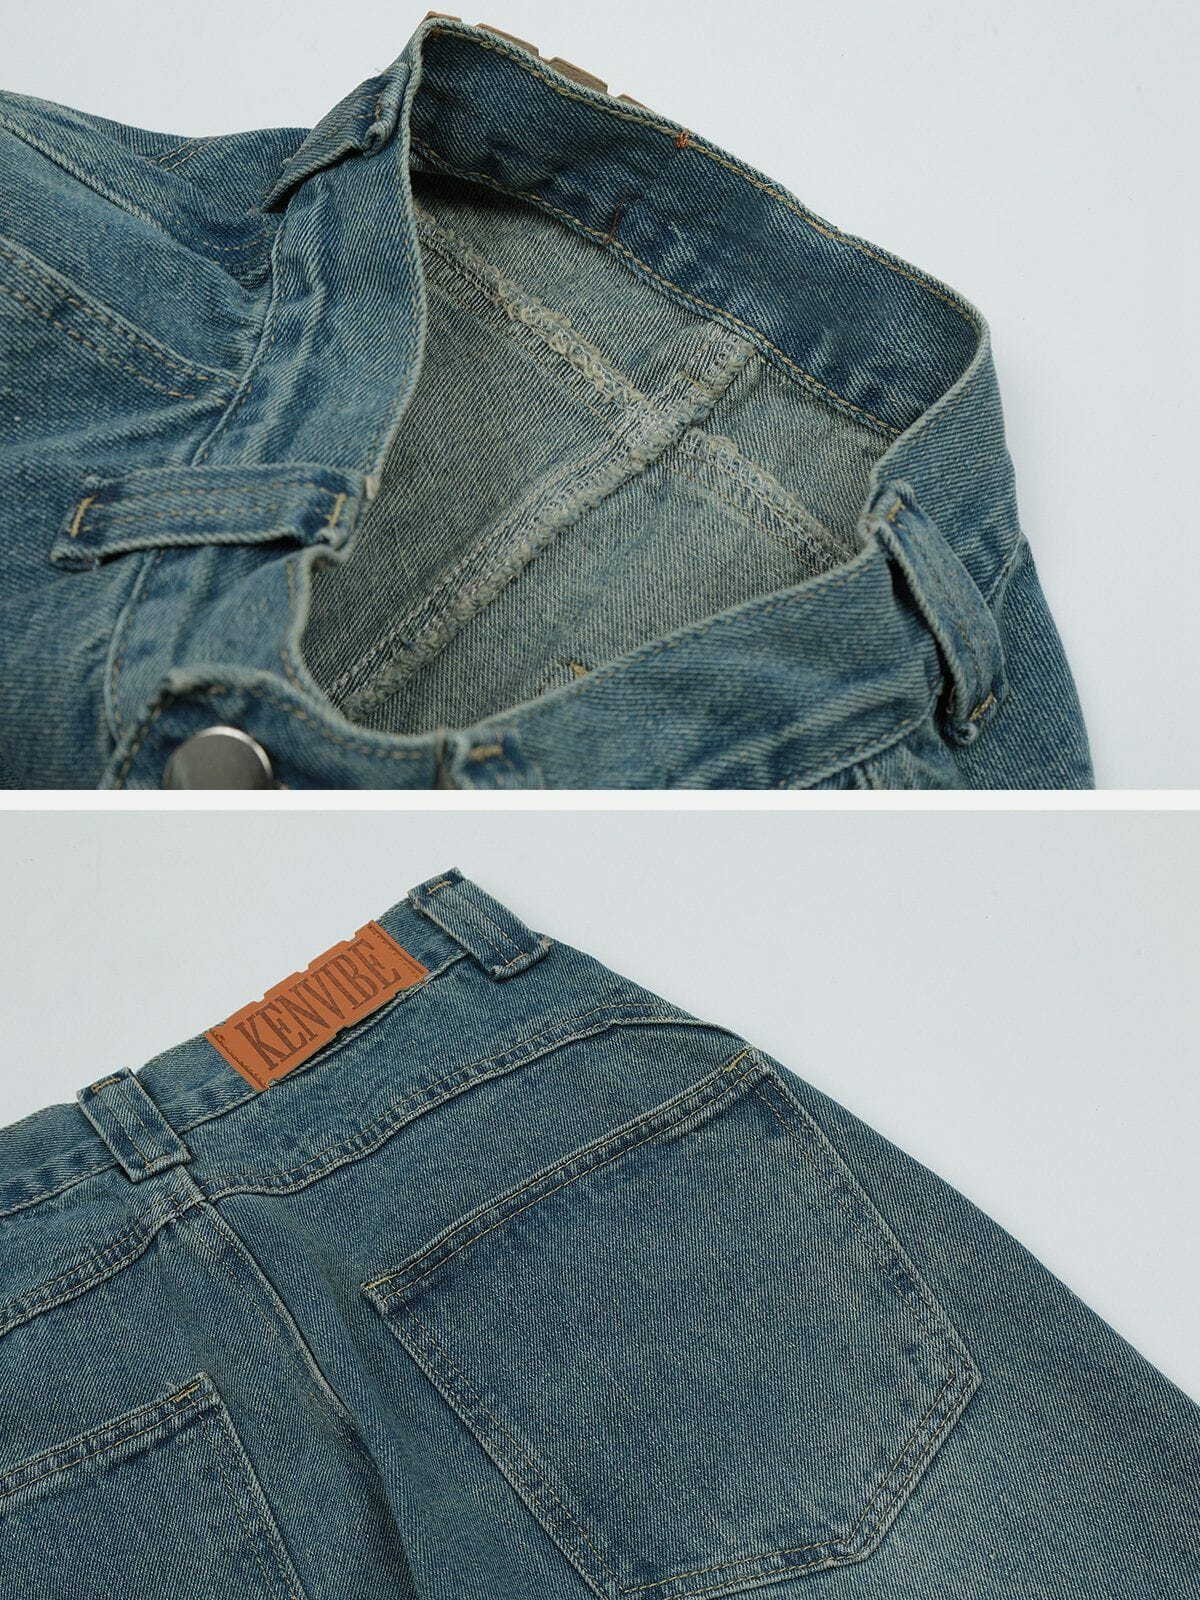 retro folded jeans edgy & stylish denim 1958